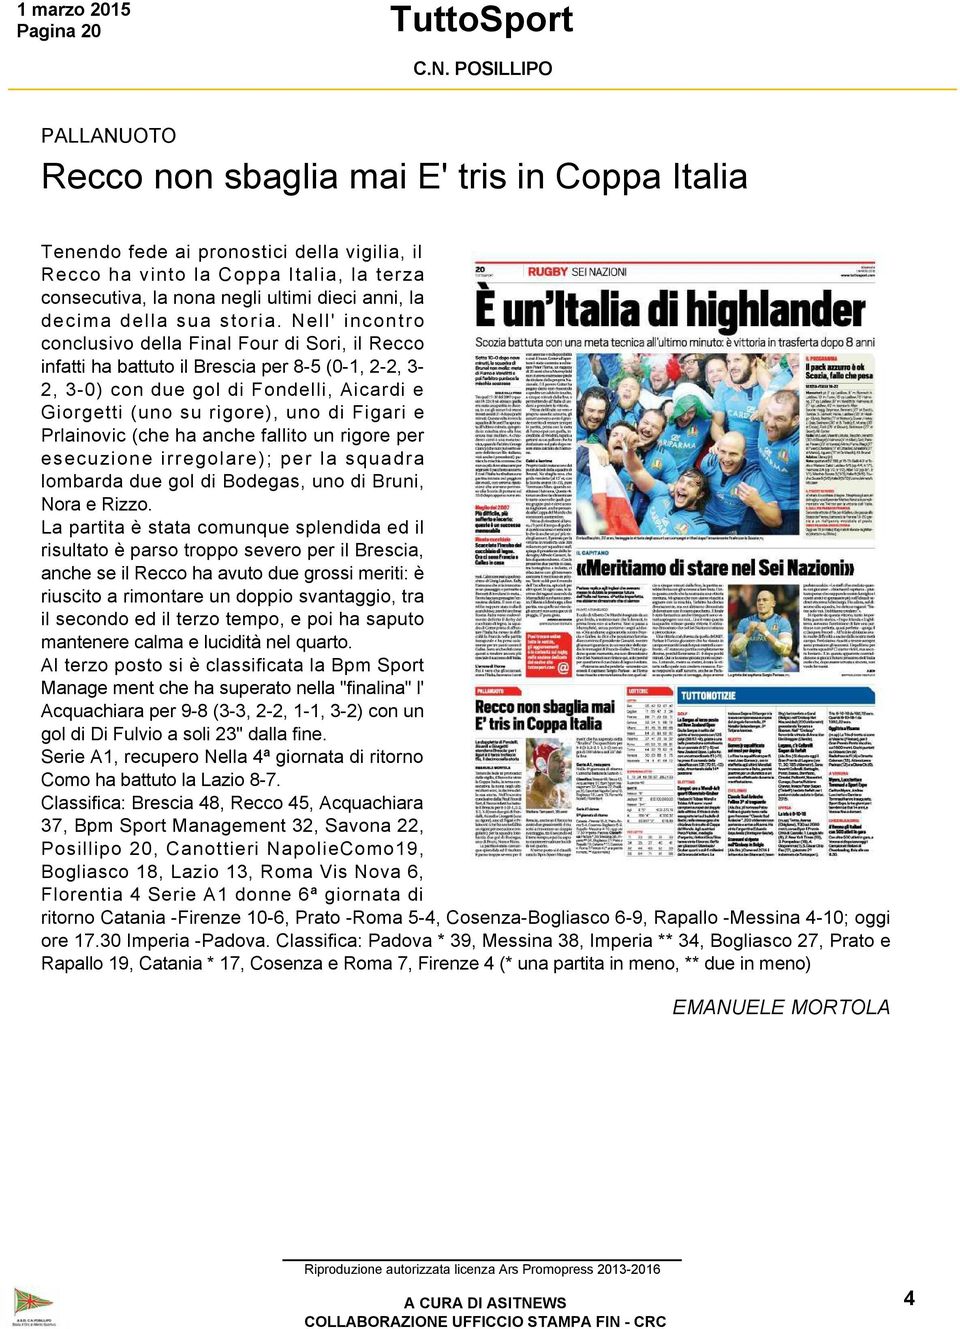 Nell' incontro conclusivo della Final Four di Sori, il Recco infatti ha battuto il Brescia per 8 5 (0 1, 2 2, 3 2, 3 0) con due gol di Fondelli, Aicardi e Giorgetti (uno su rigore), uno di Figari e